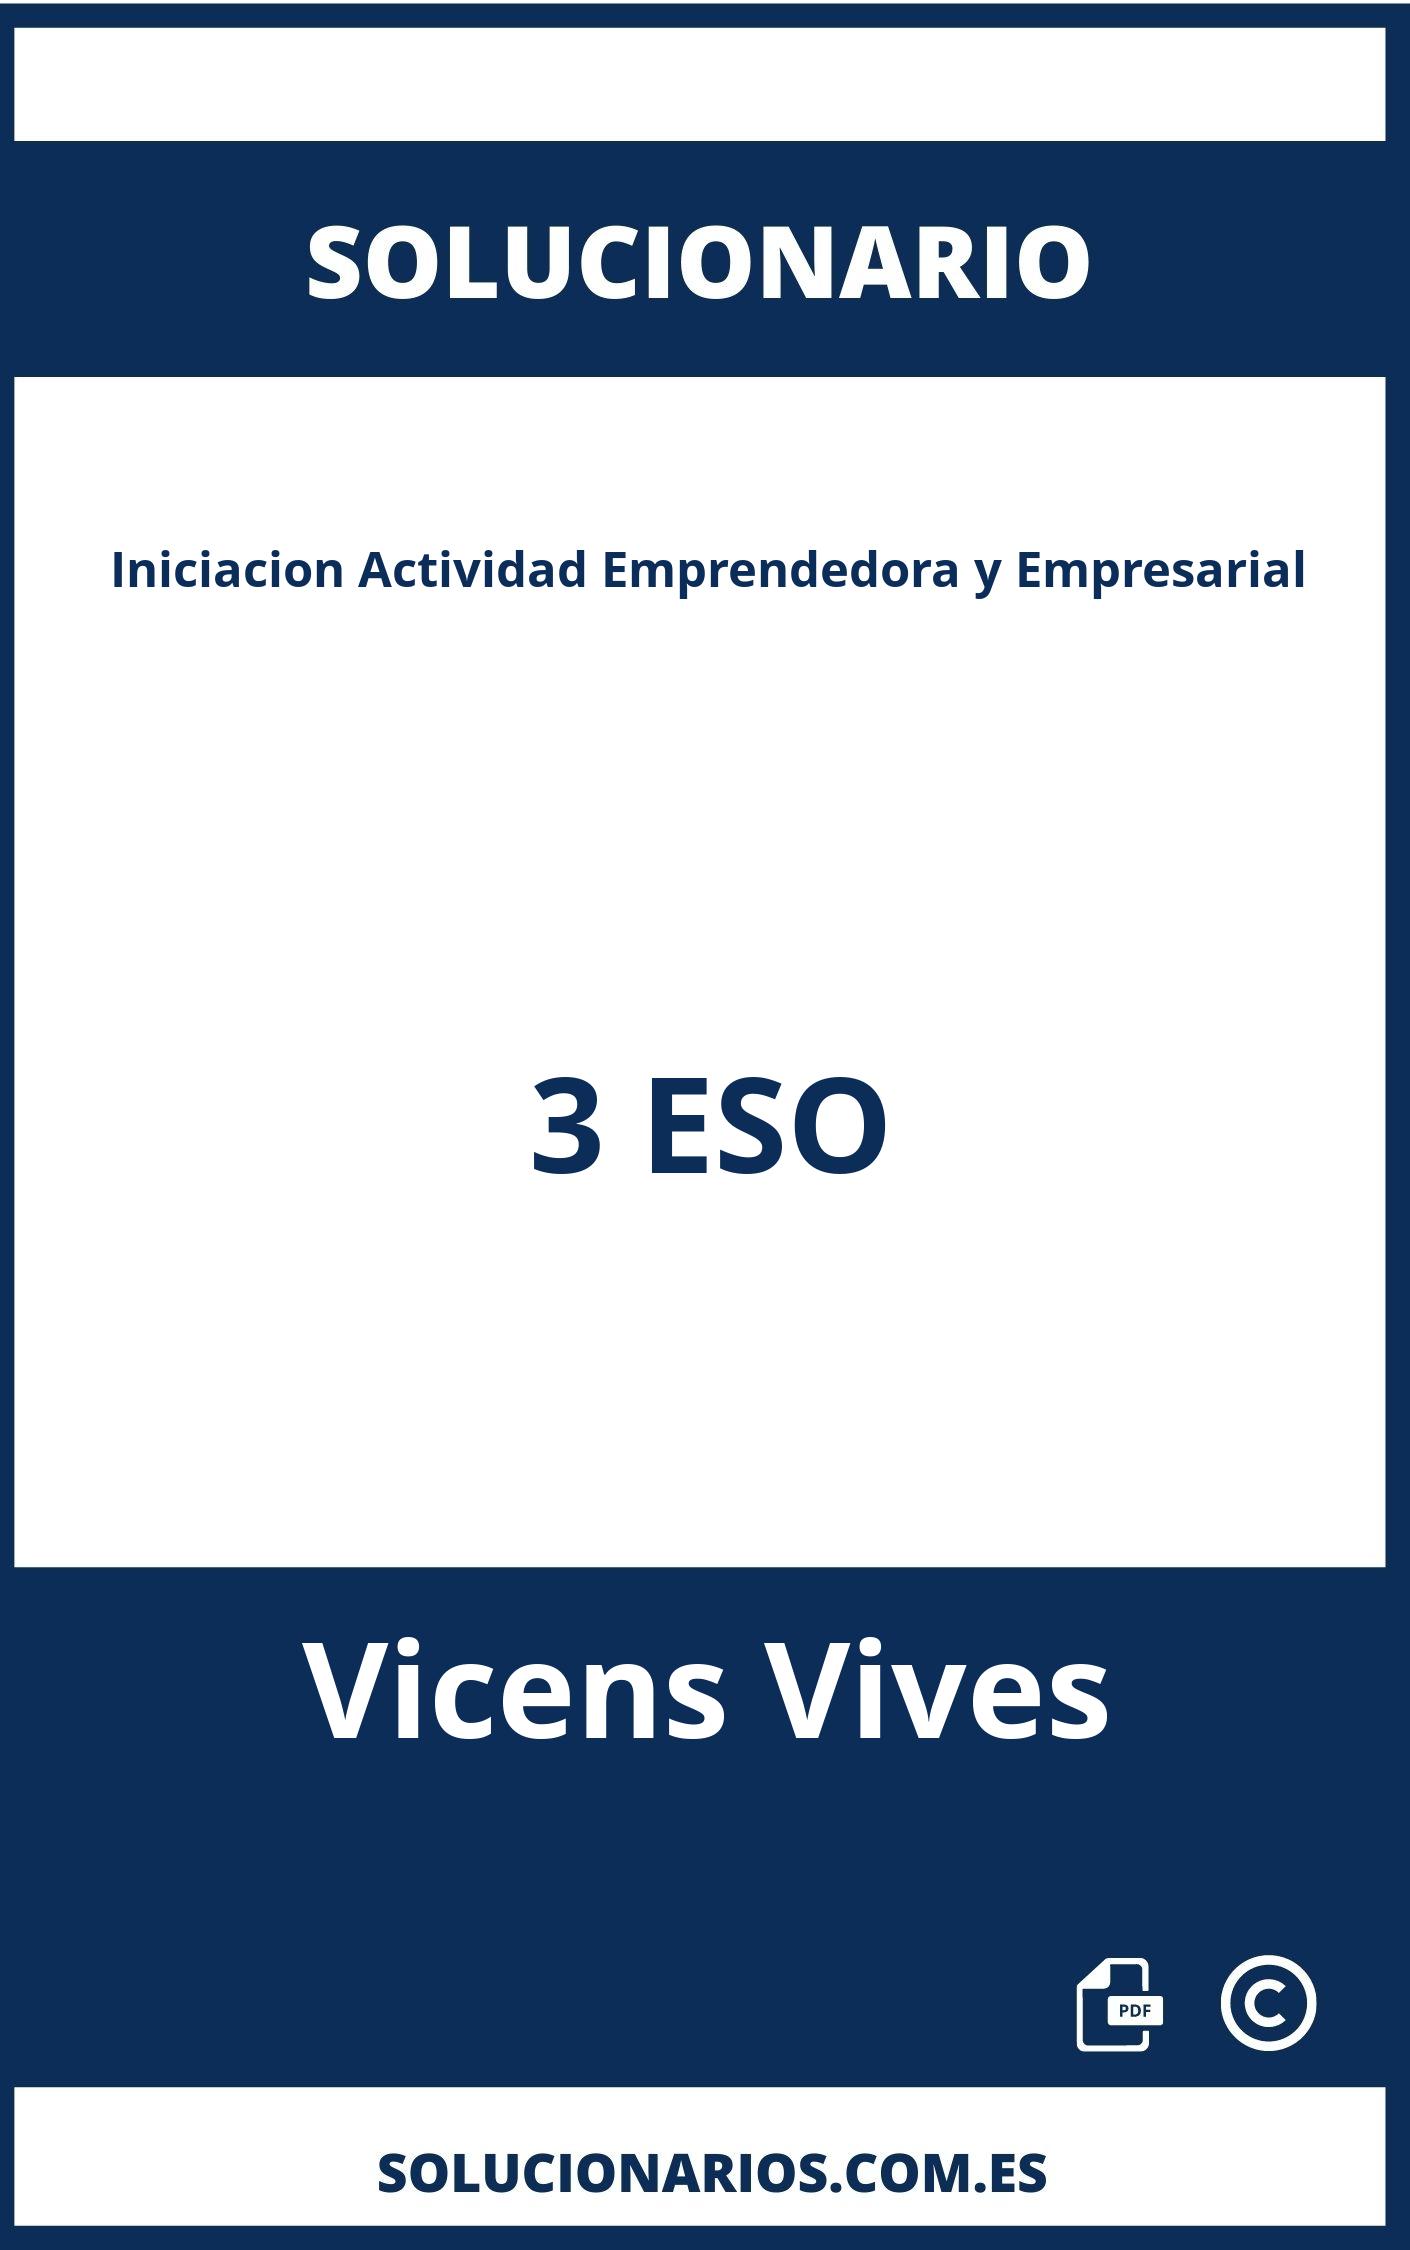 Solucionario Iniciacion Actividad Emprendedora y Empresarial 3 ESO Vicens Vives